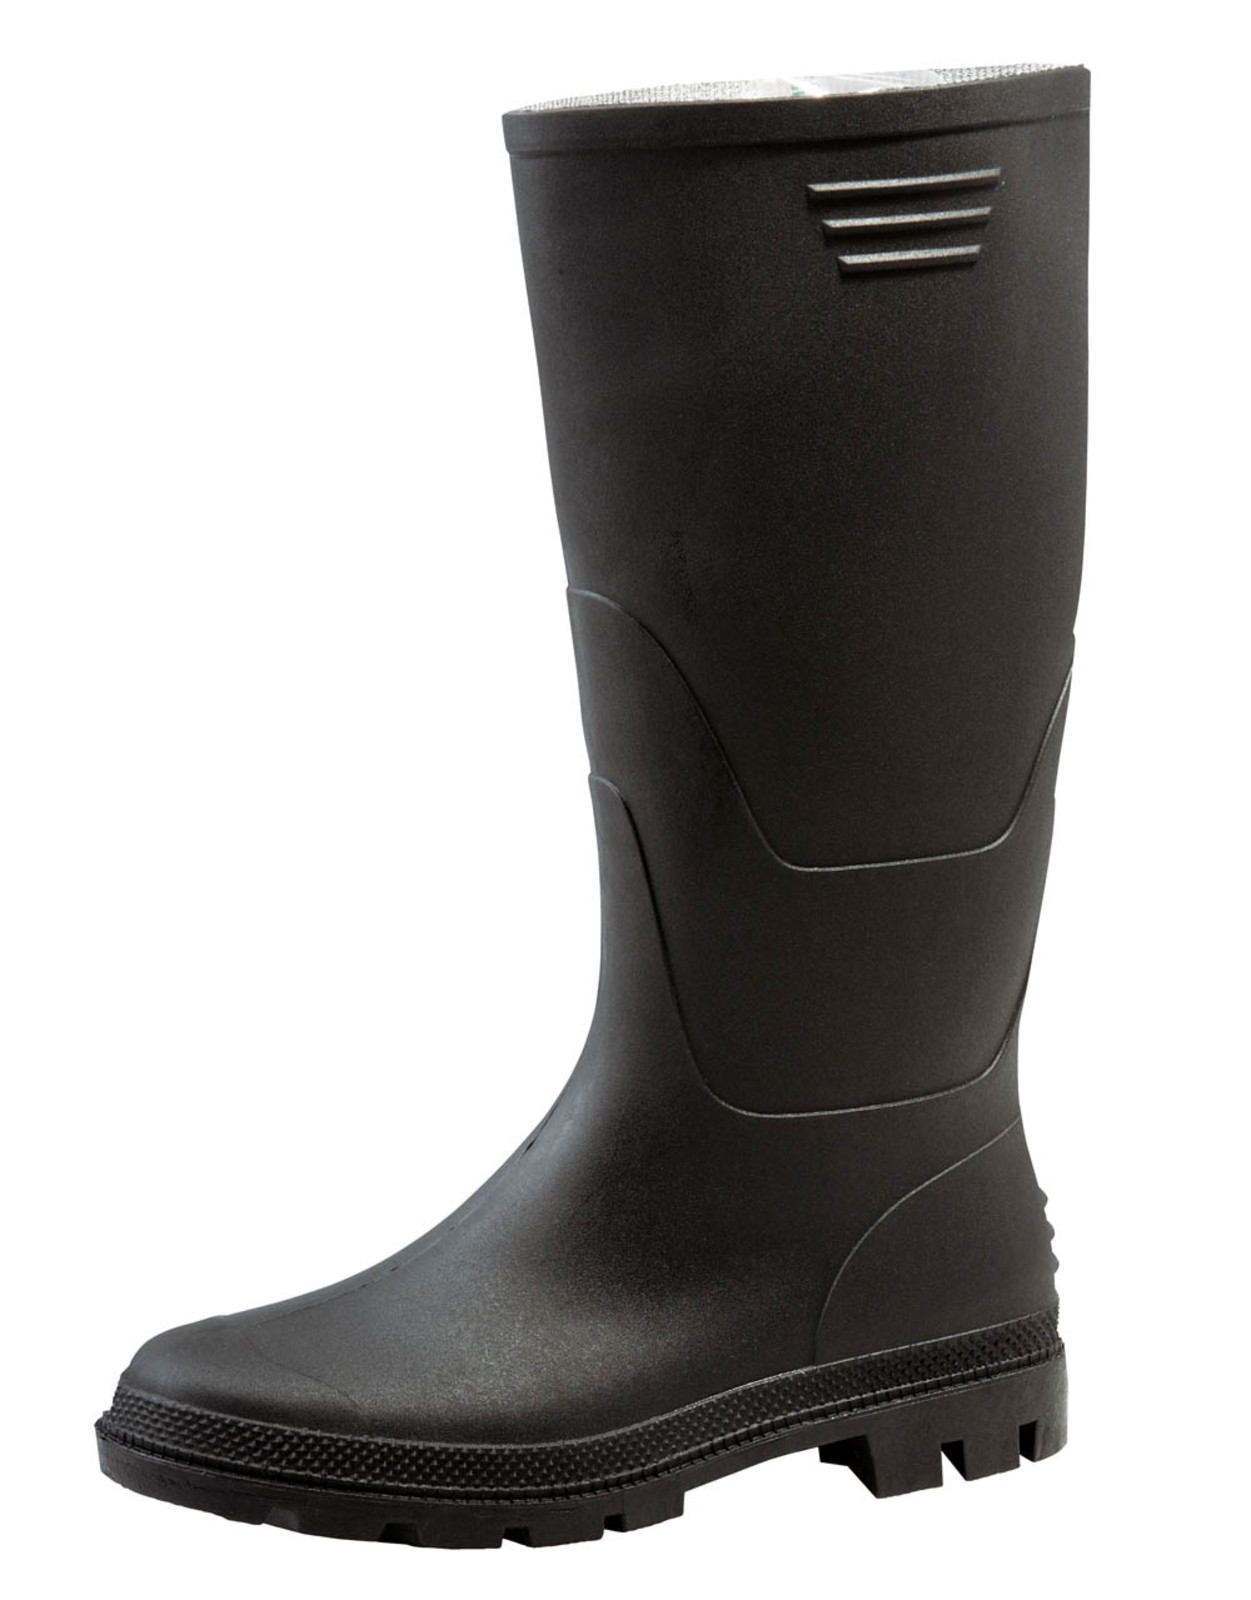 Gumáky Boots Ginocchio PVC - veľkosť: 40, farba: čierna